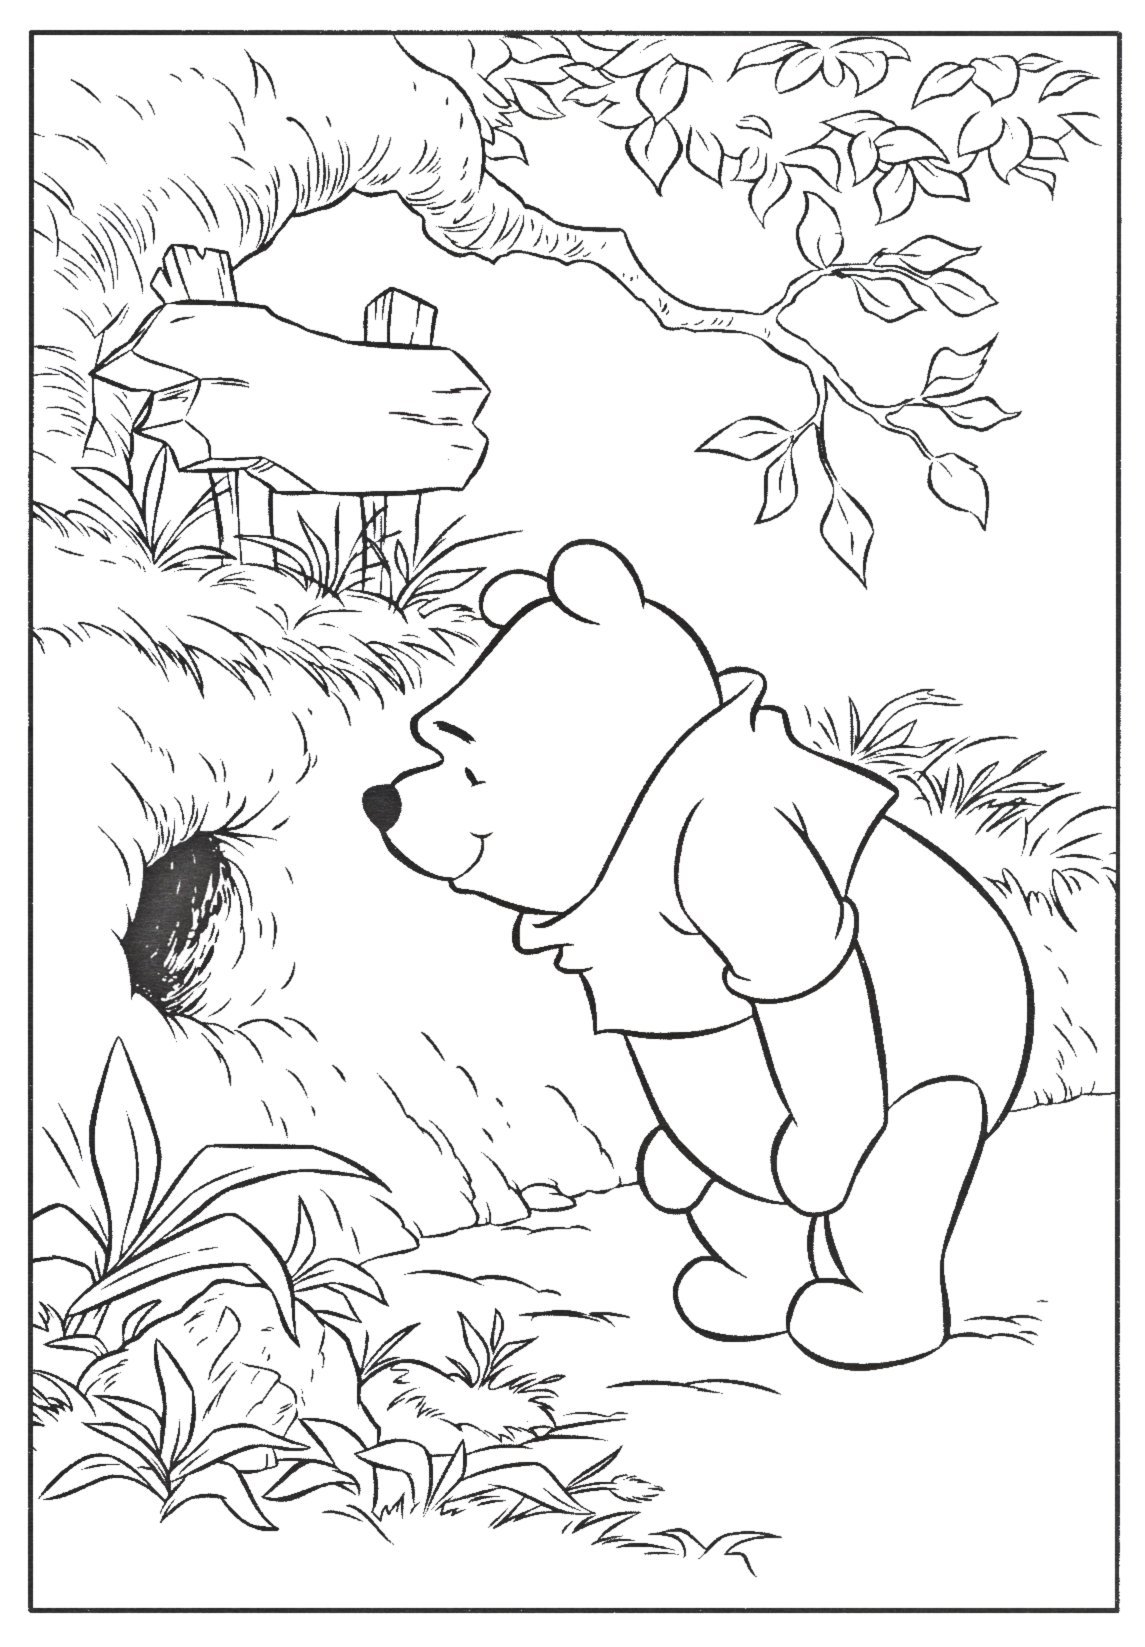 Медведи раскраска игра. Раскраска "Винни-пух". Медведь раскраска. Медведь раскраска для детей. Раскраска мишка Винни пух.